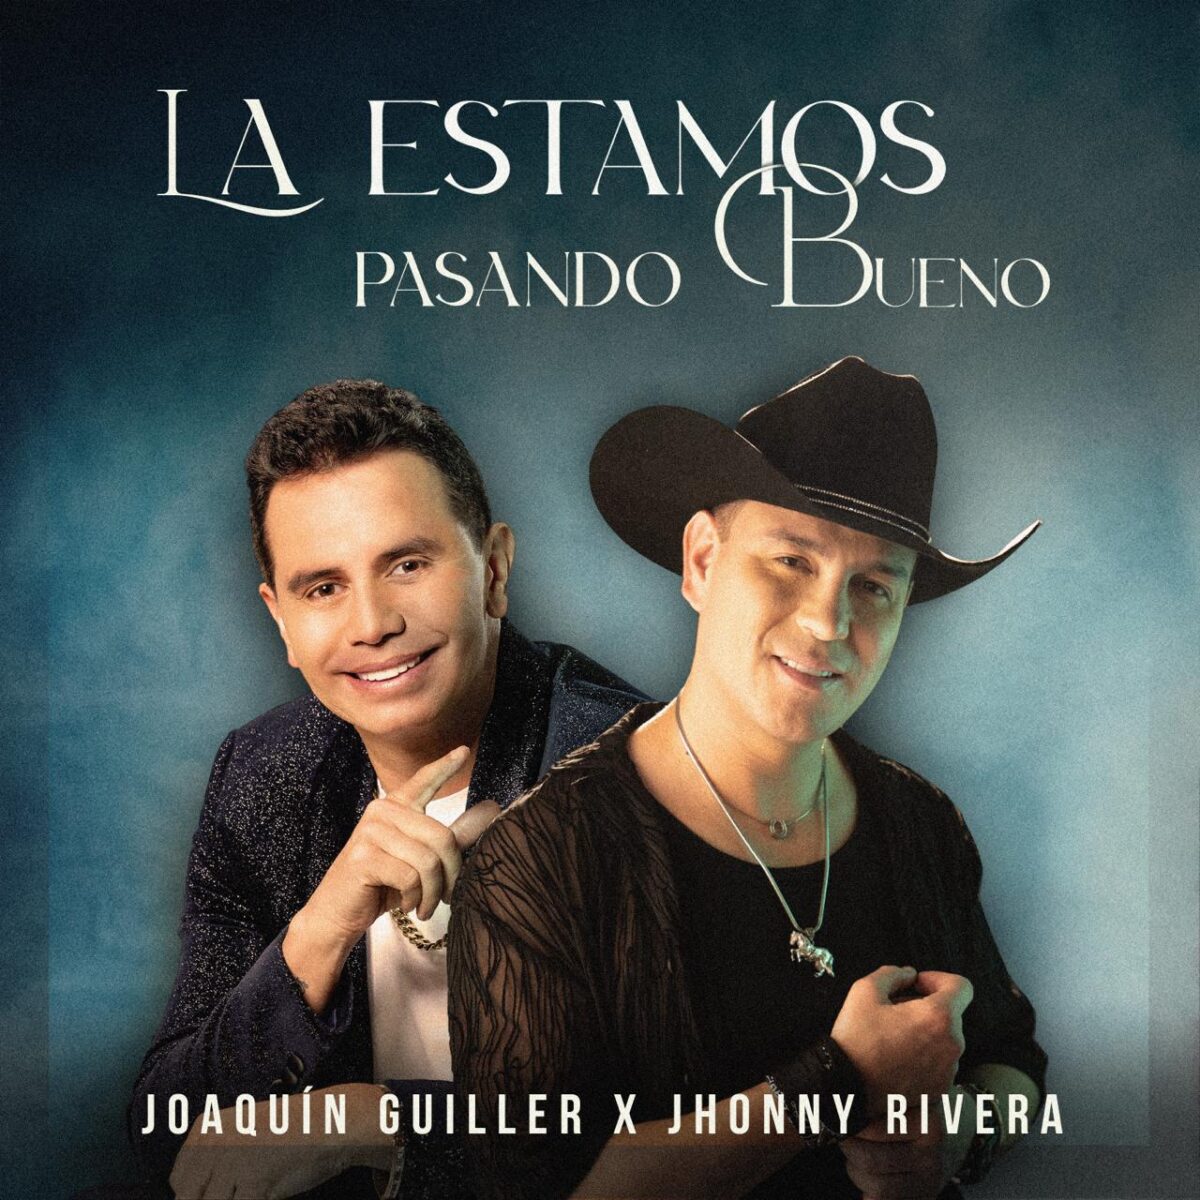 Joaquín Guiller y Jhonny Rivera lanzan su nueva canción 'La Estamos Pasando Bueno' La canción está dirigida a todos aquellos que disfrutan de la rumba y al día siguiente no recuerdan lo que pasó.